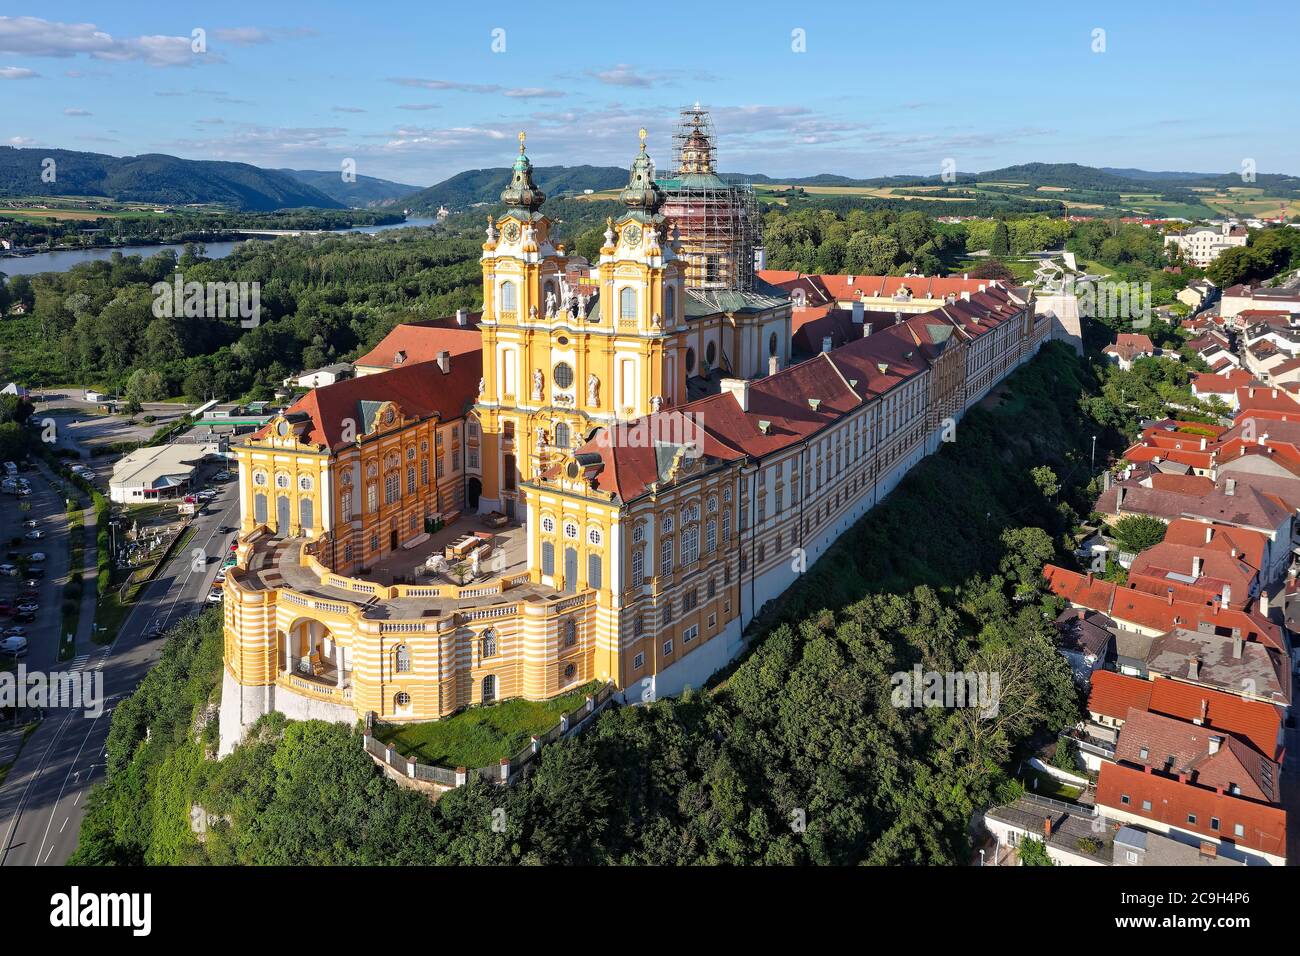 Abbazia di Melk, monastero, abbazia benedettina, barocco austriaco, costruito 1702-1746, patrimonio dell'umanità dell'UNESCO, dietro il fiume Danubio, vicino a Melk, Wachau Foto Stock